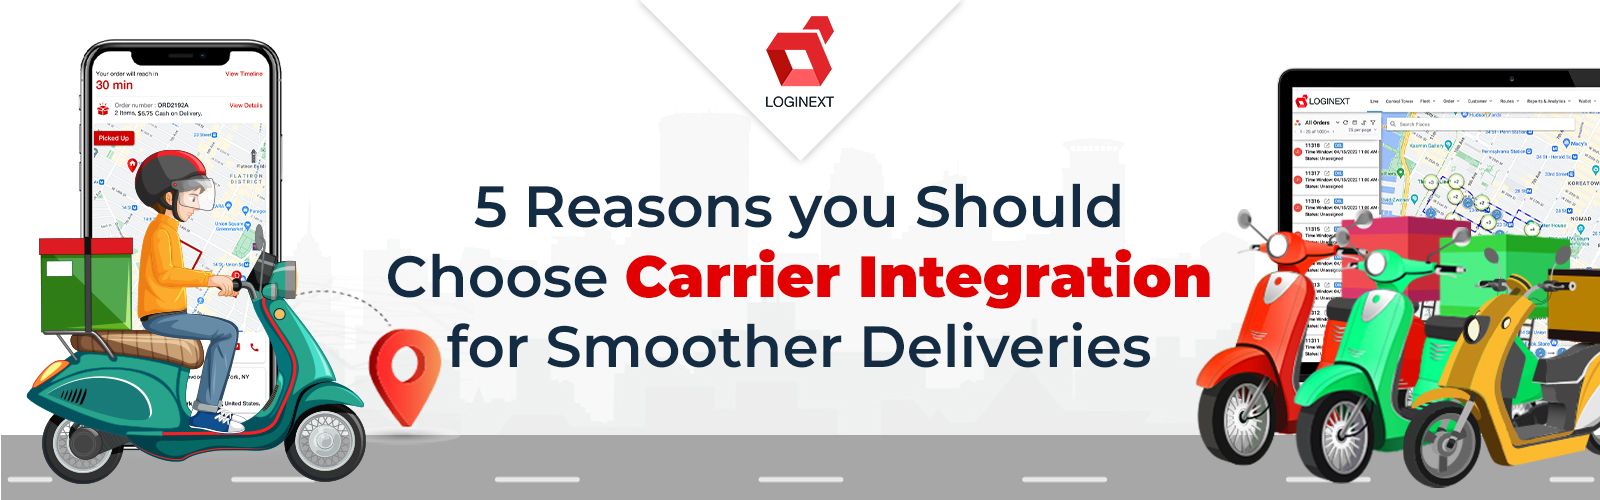 5 Gründe, warum Sie sich für eine reibungslosere Zustellung für die Carrier-Integration entscheiden sollten